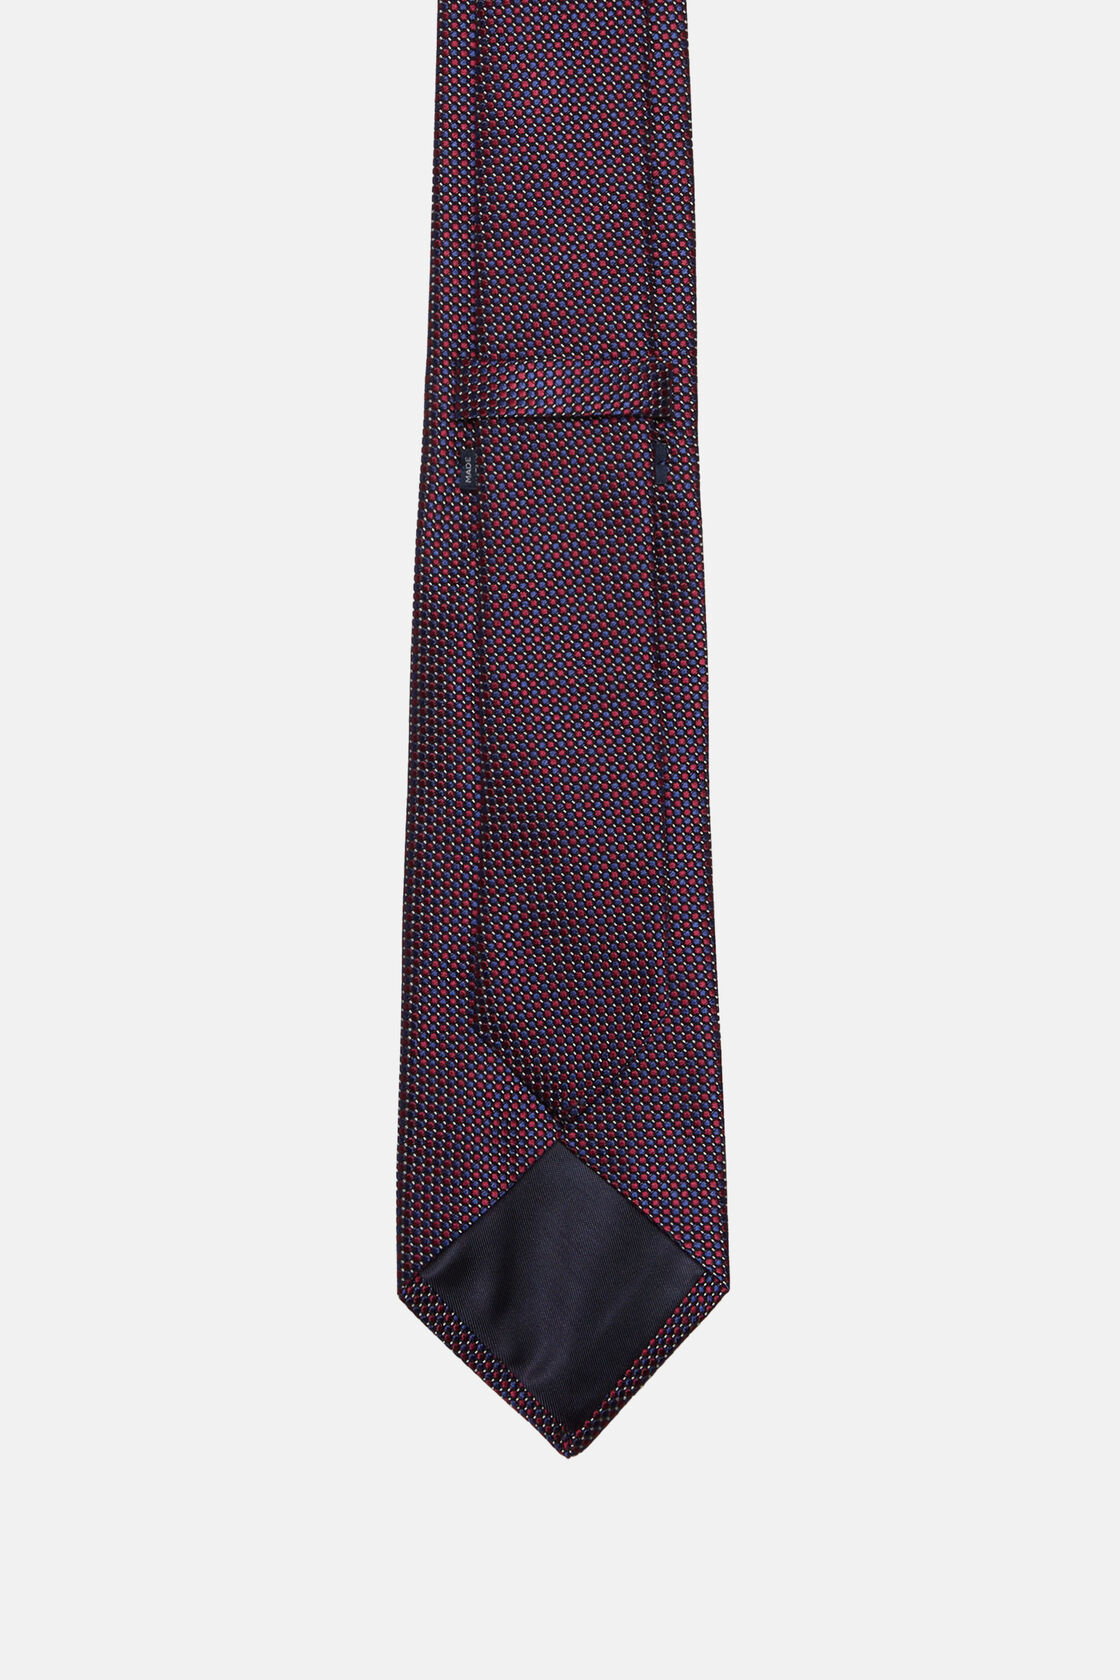 Πουά γραβάτα από σύμμεικτο μετάξι, Burgundy, hi-res